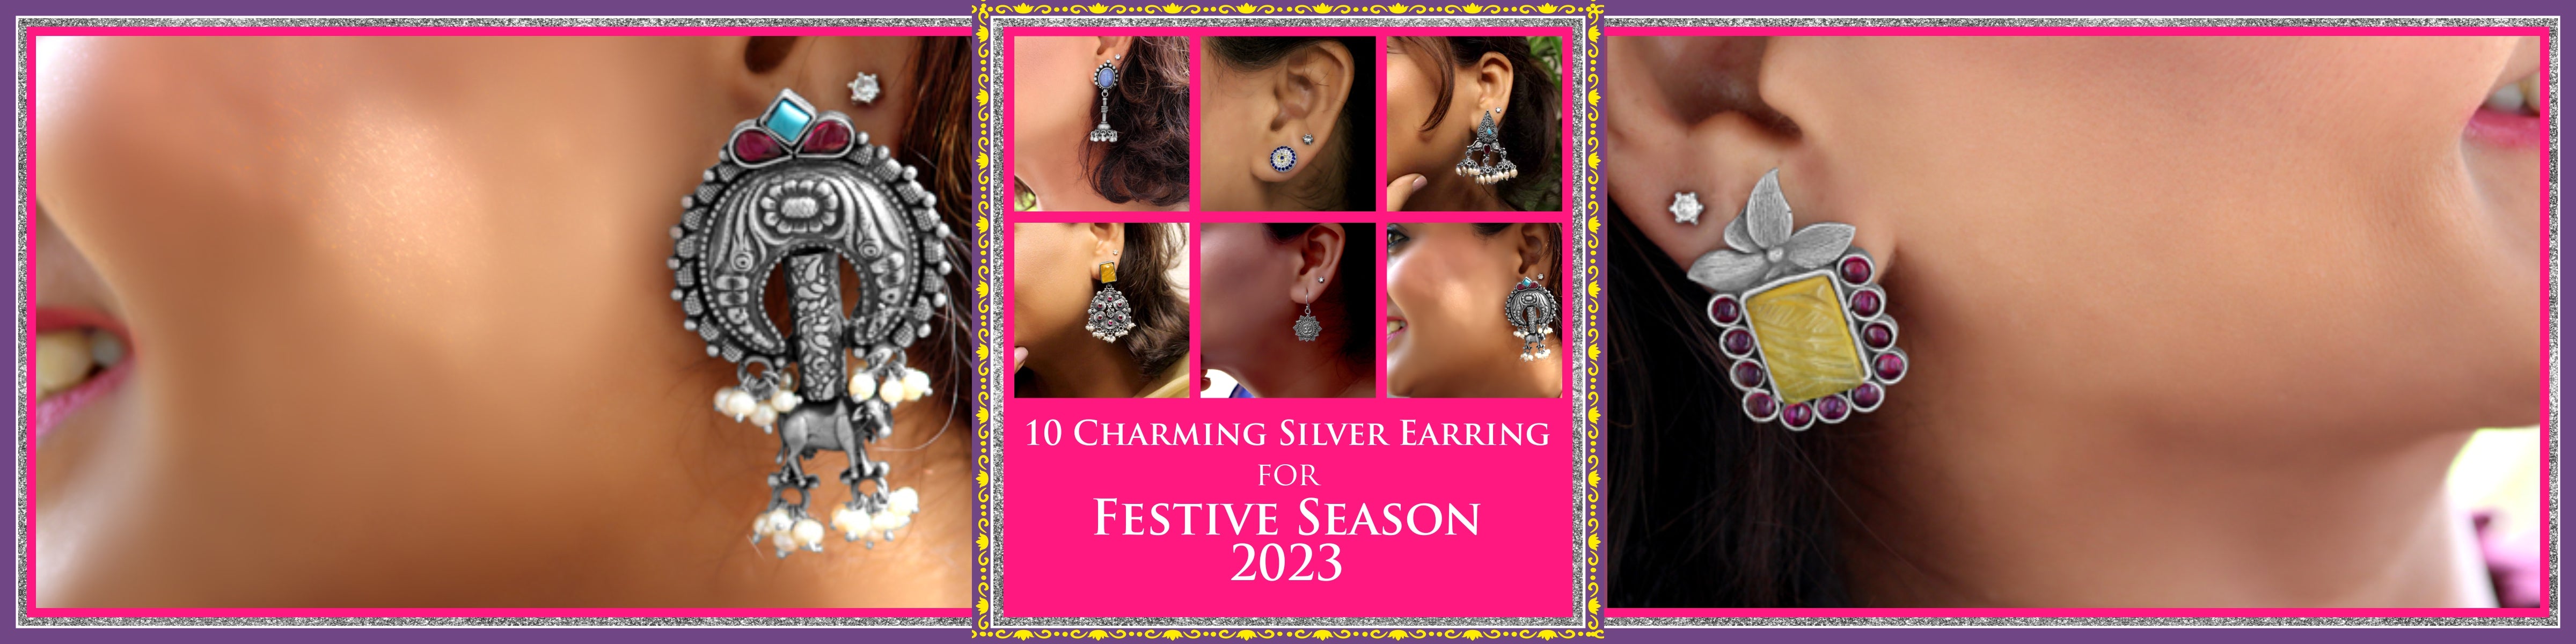 10 Charming Silver Earring Designs by Raajraani for Festive Season 2023